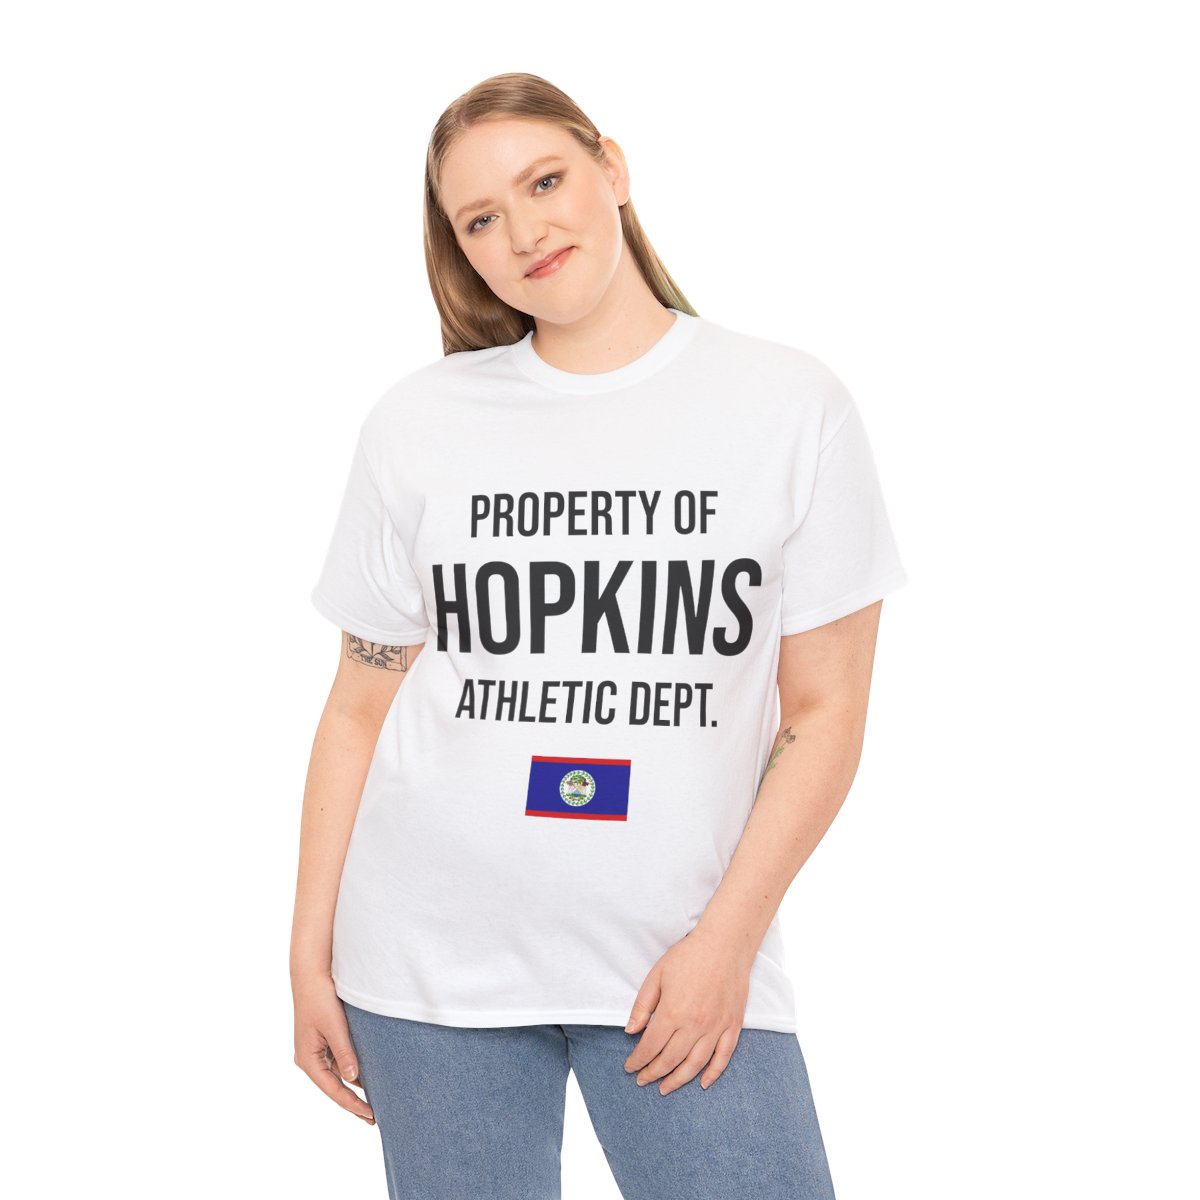 Hopkins Athletic Dept. Unisex Tshirt product thumbnail image